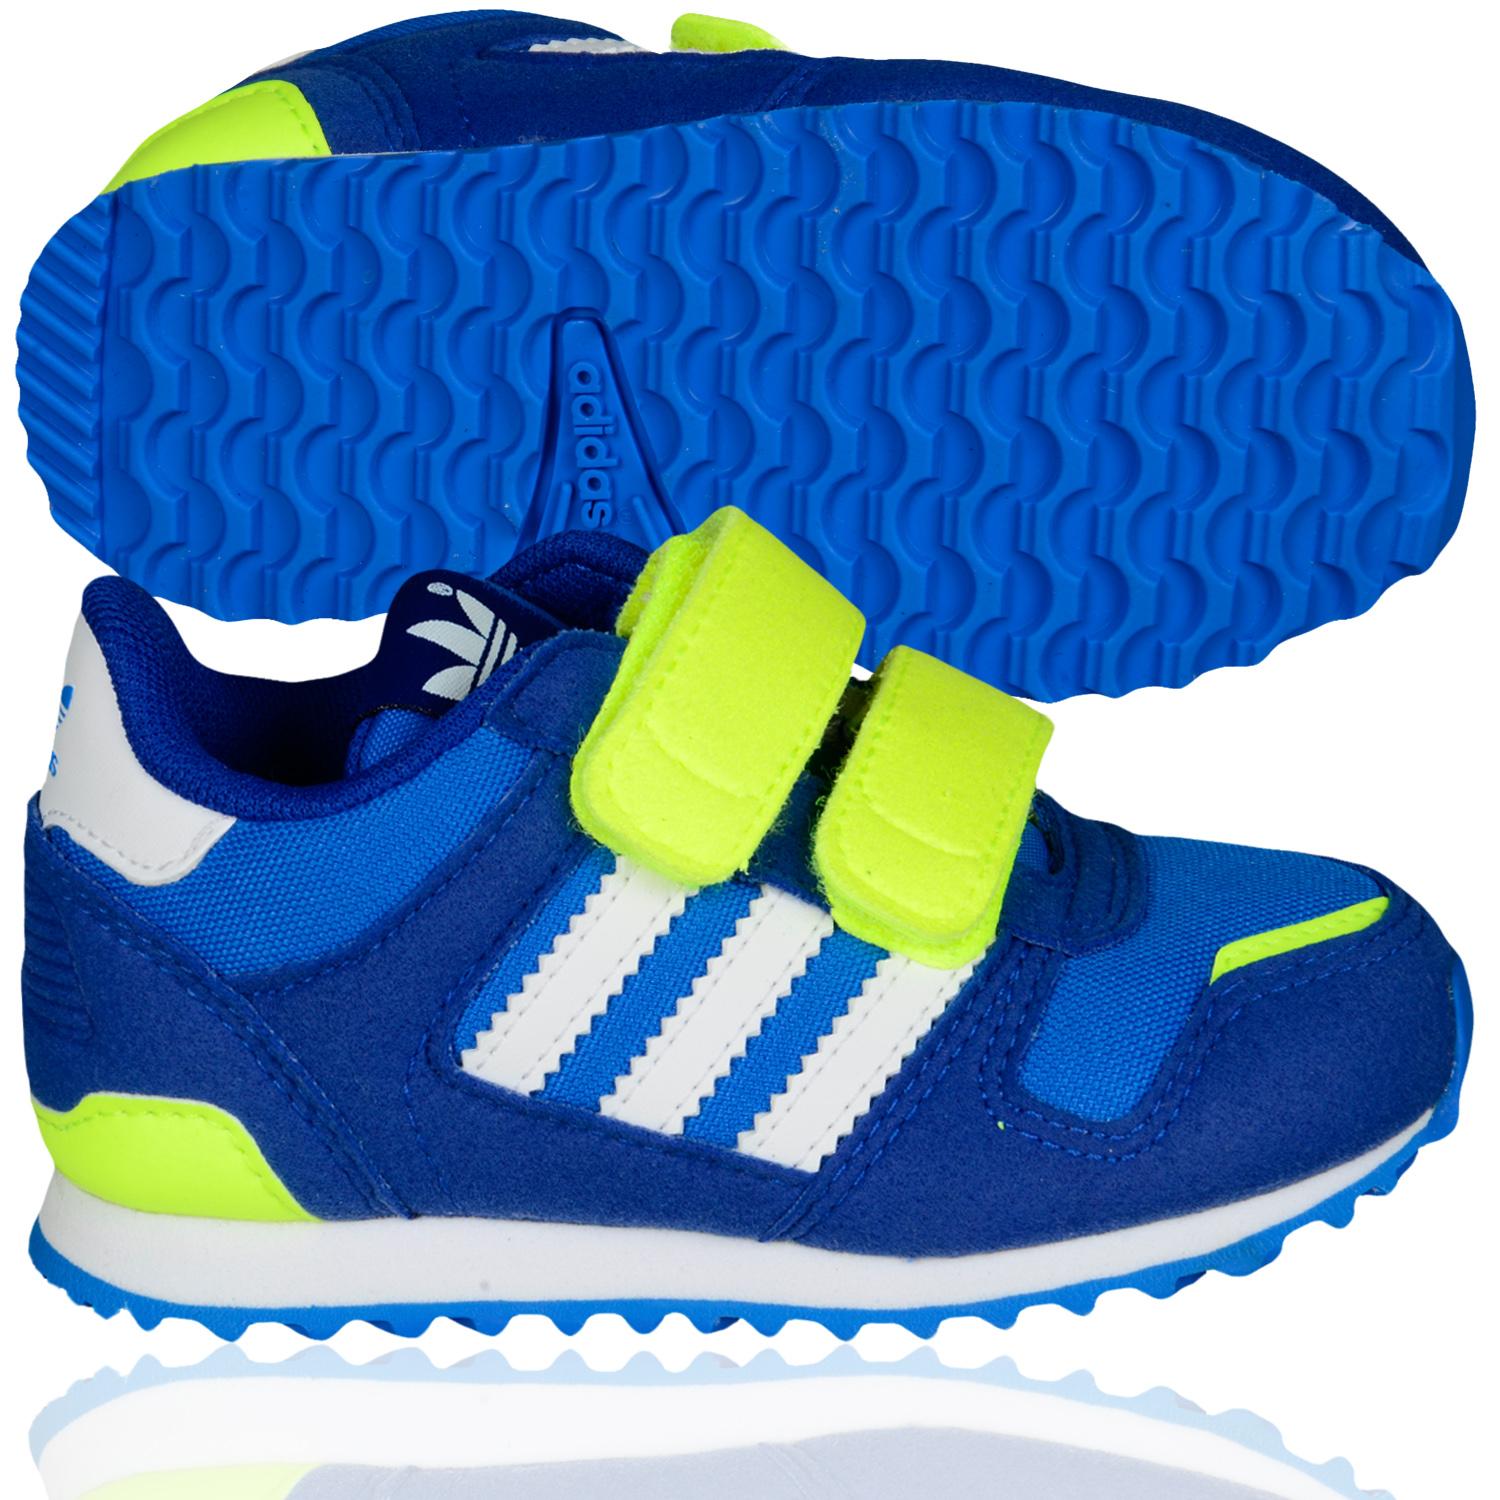 Foto Adidas Shoe Kids Zx 700 Cf 1 La Zapatilla De Deporte Bajo Azul